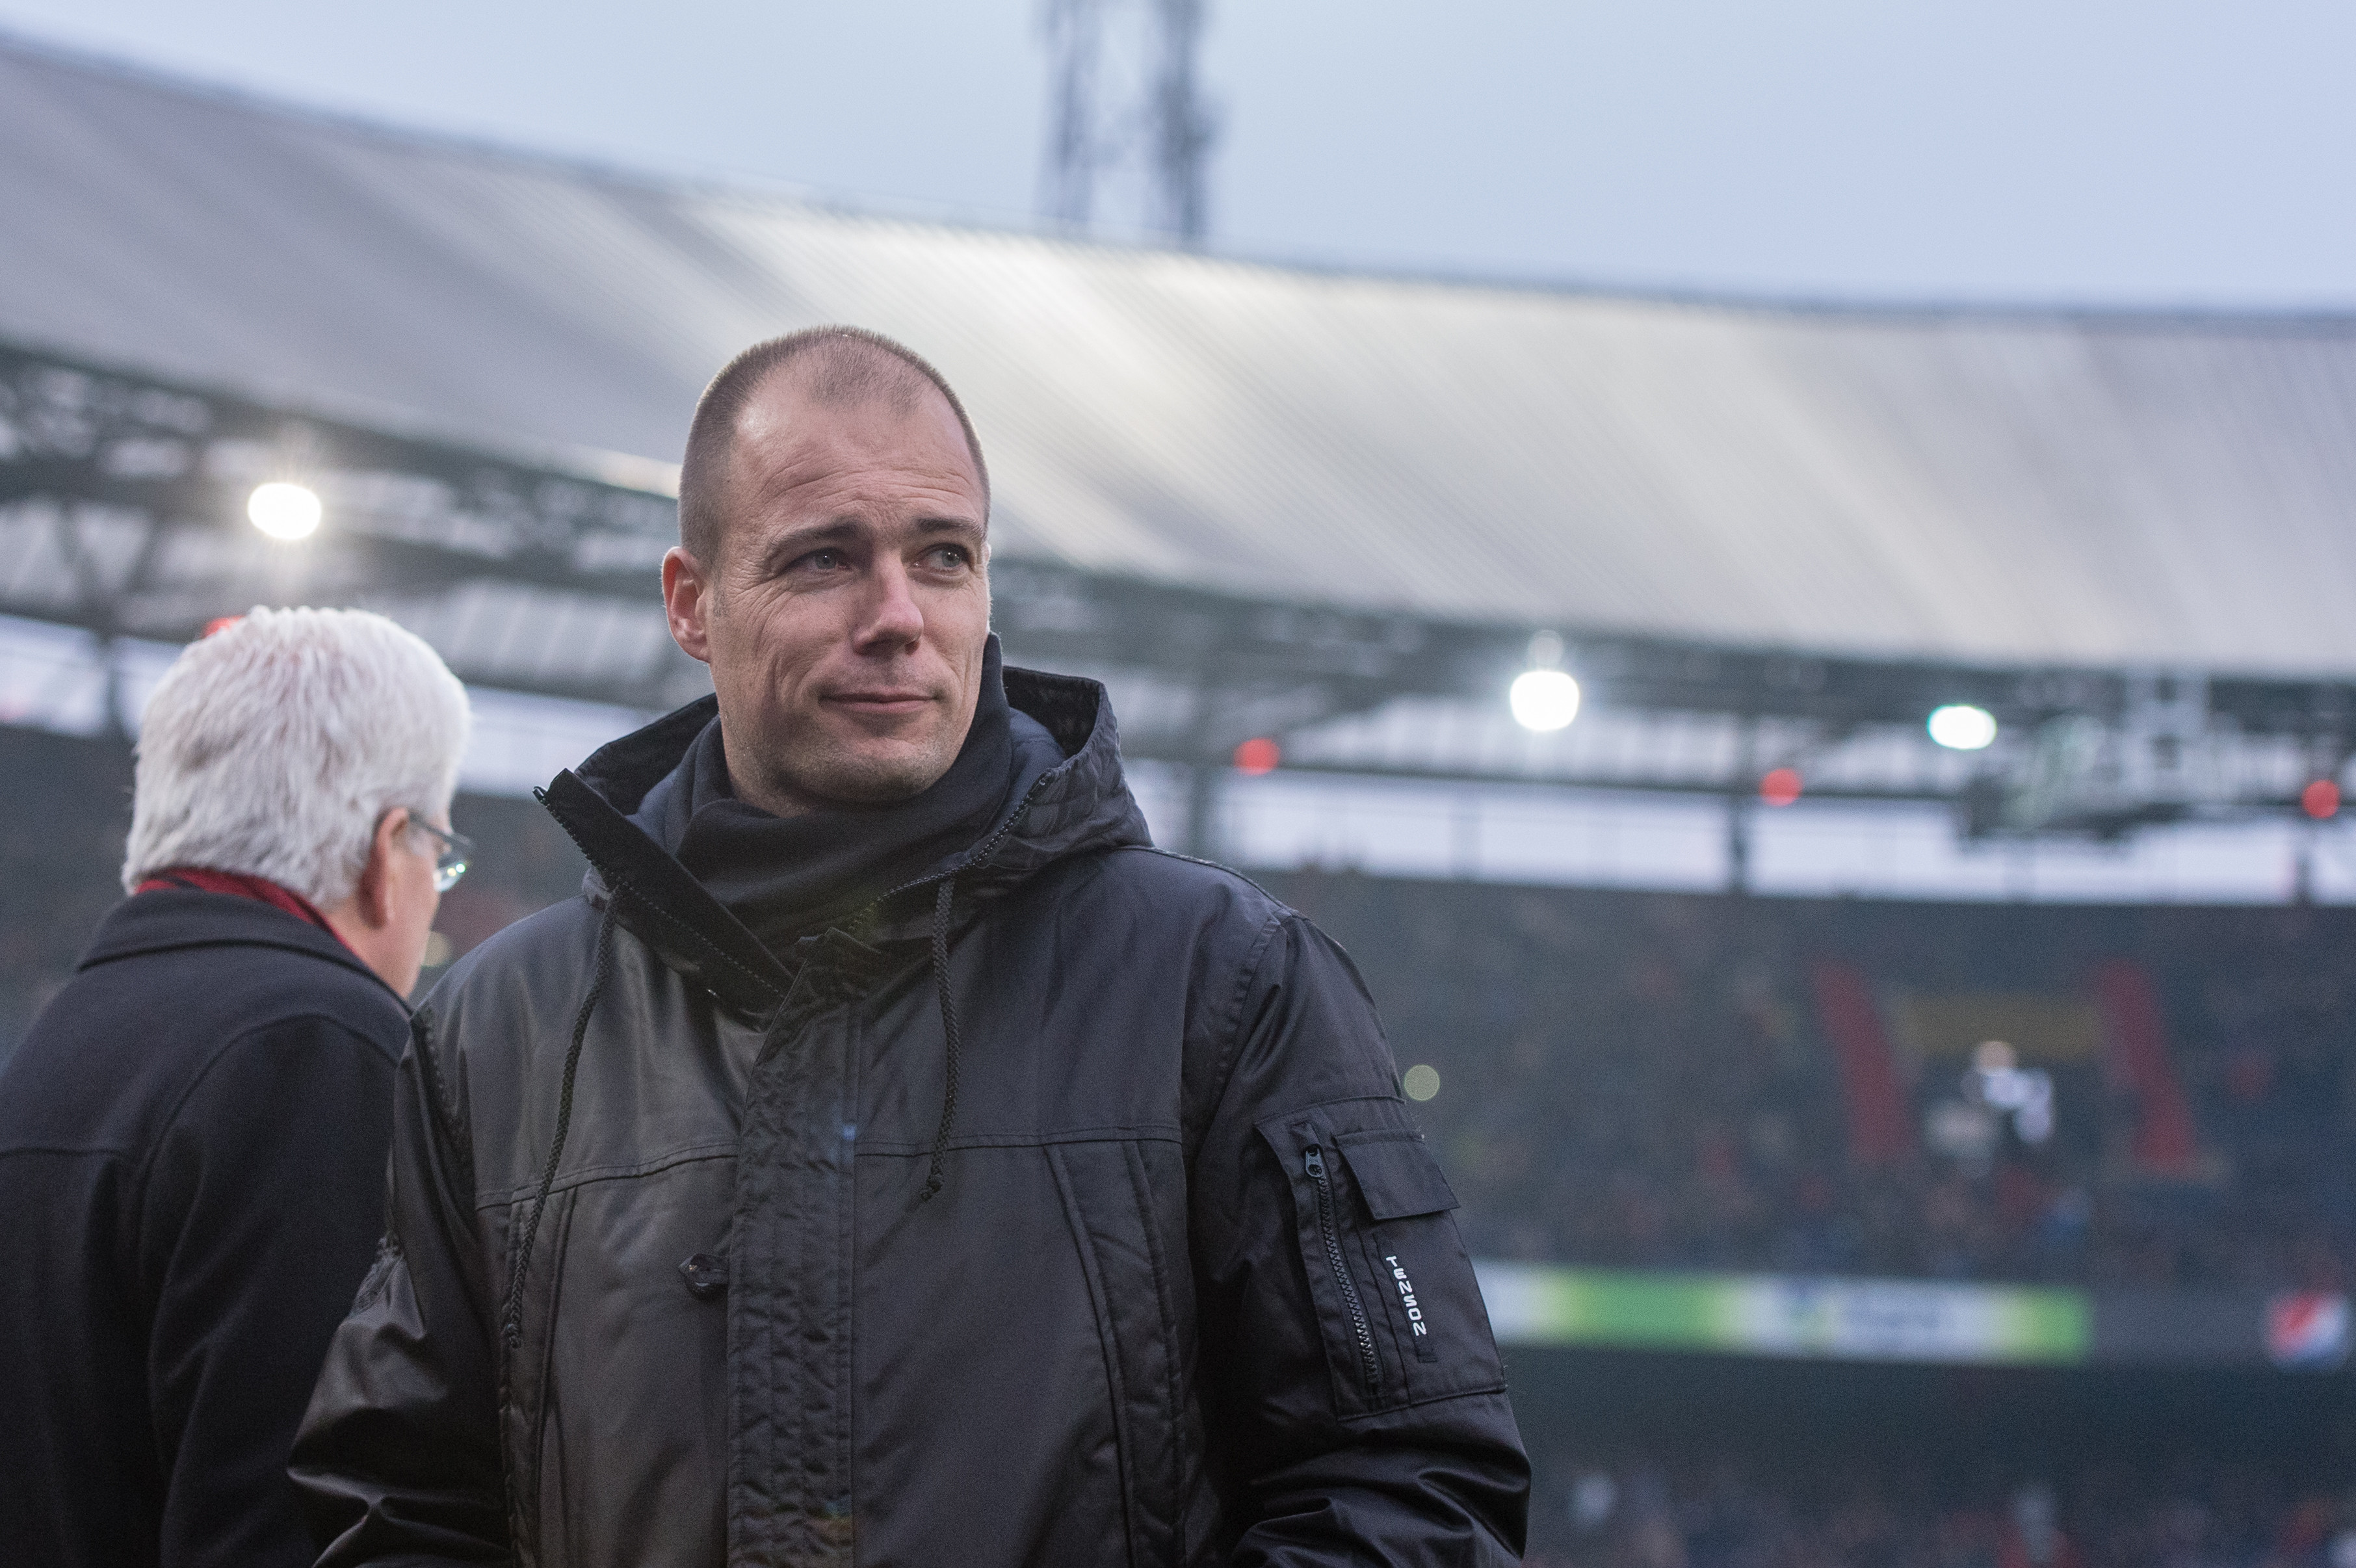 Buijs prijst clubliefde Geertruida: "Heel mooi dat hij er op deze manier inzit"